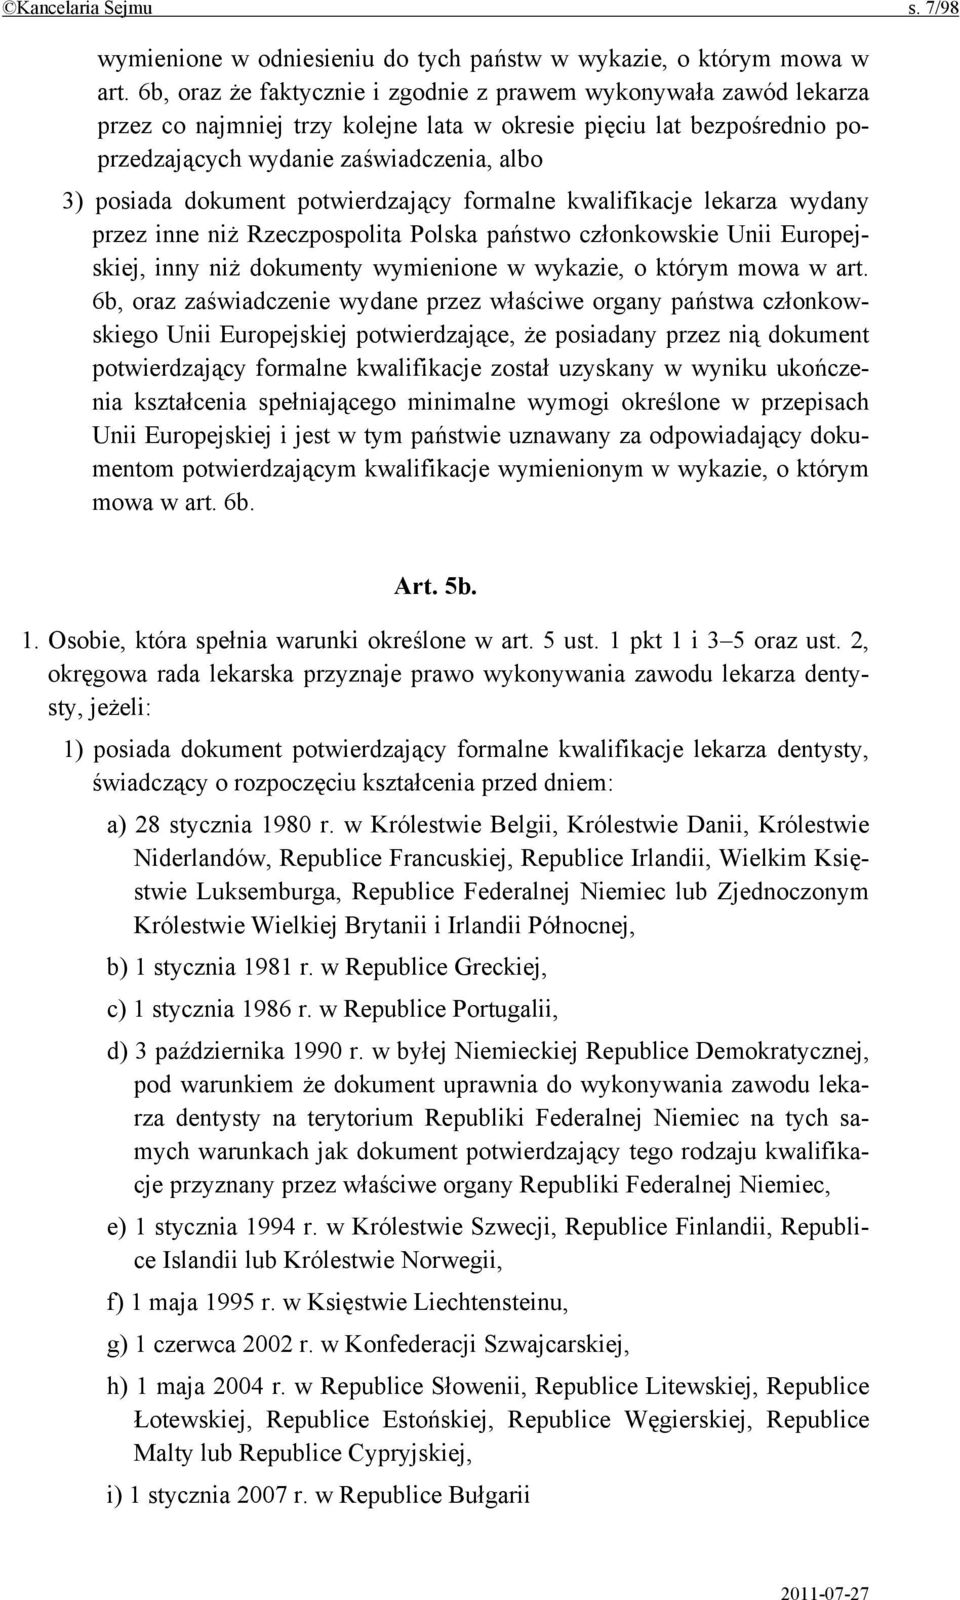 dokument potwierdzający formalne kwalifikacje lekarza wydany przez inne niż Rzeczpospolita Polska państwo członkowskie Unii Europejskiej, inny niż dokumenty wymienione w wykazie, o którym mowa w art.